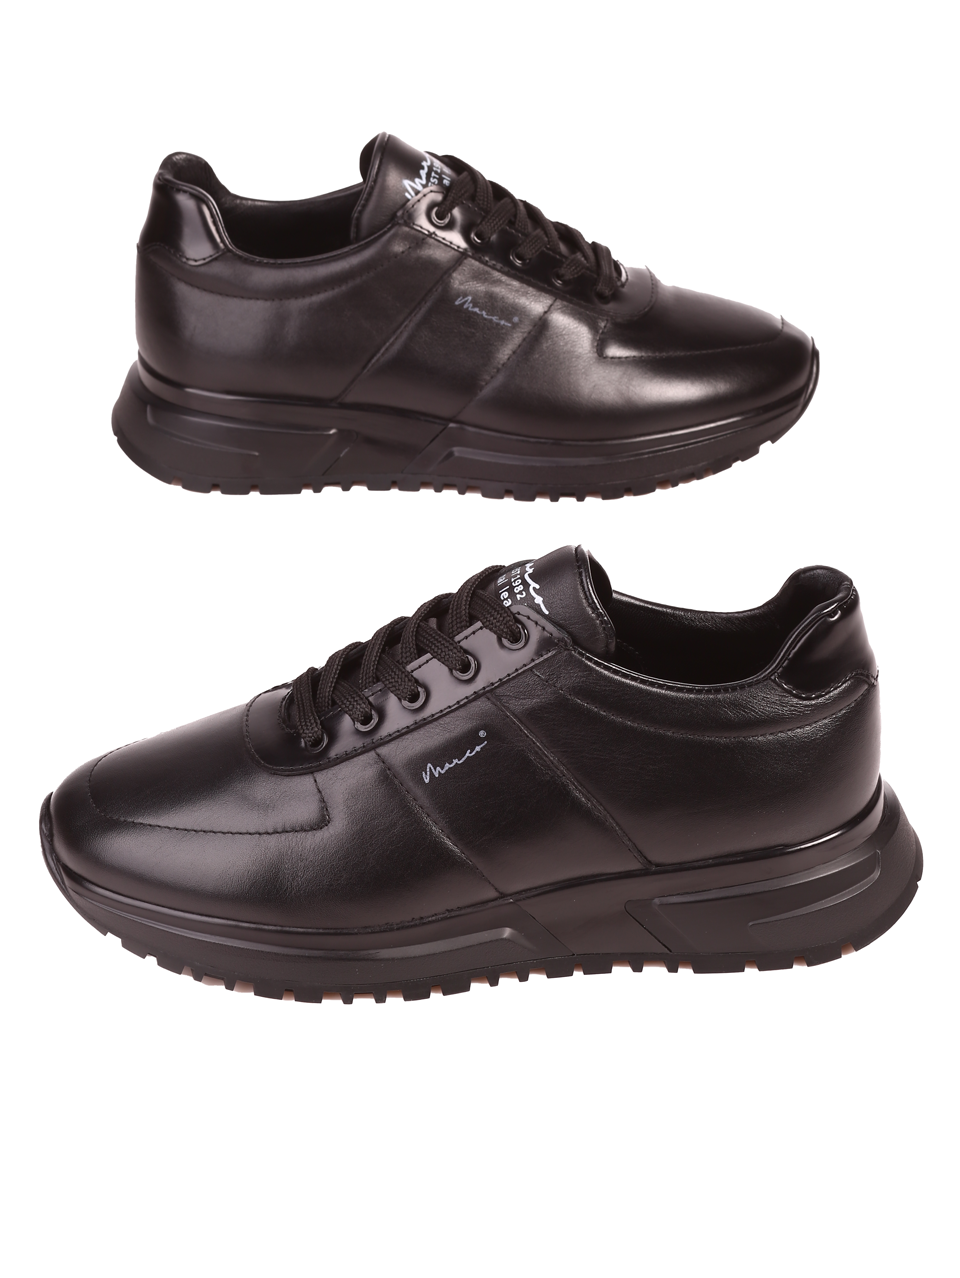 Ежедневни мъжки обувки от естествена кожа  152-19493 S-2 black